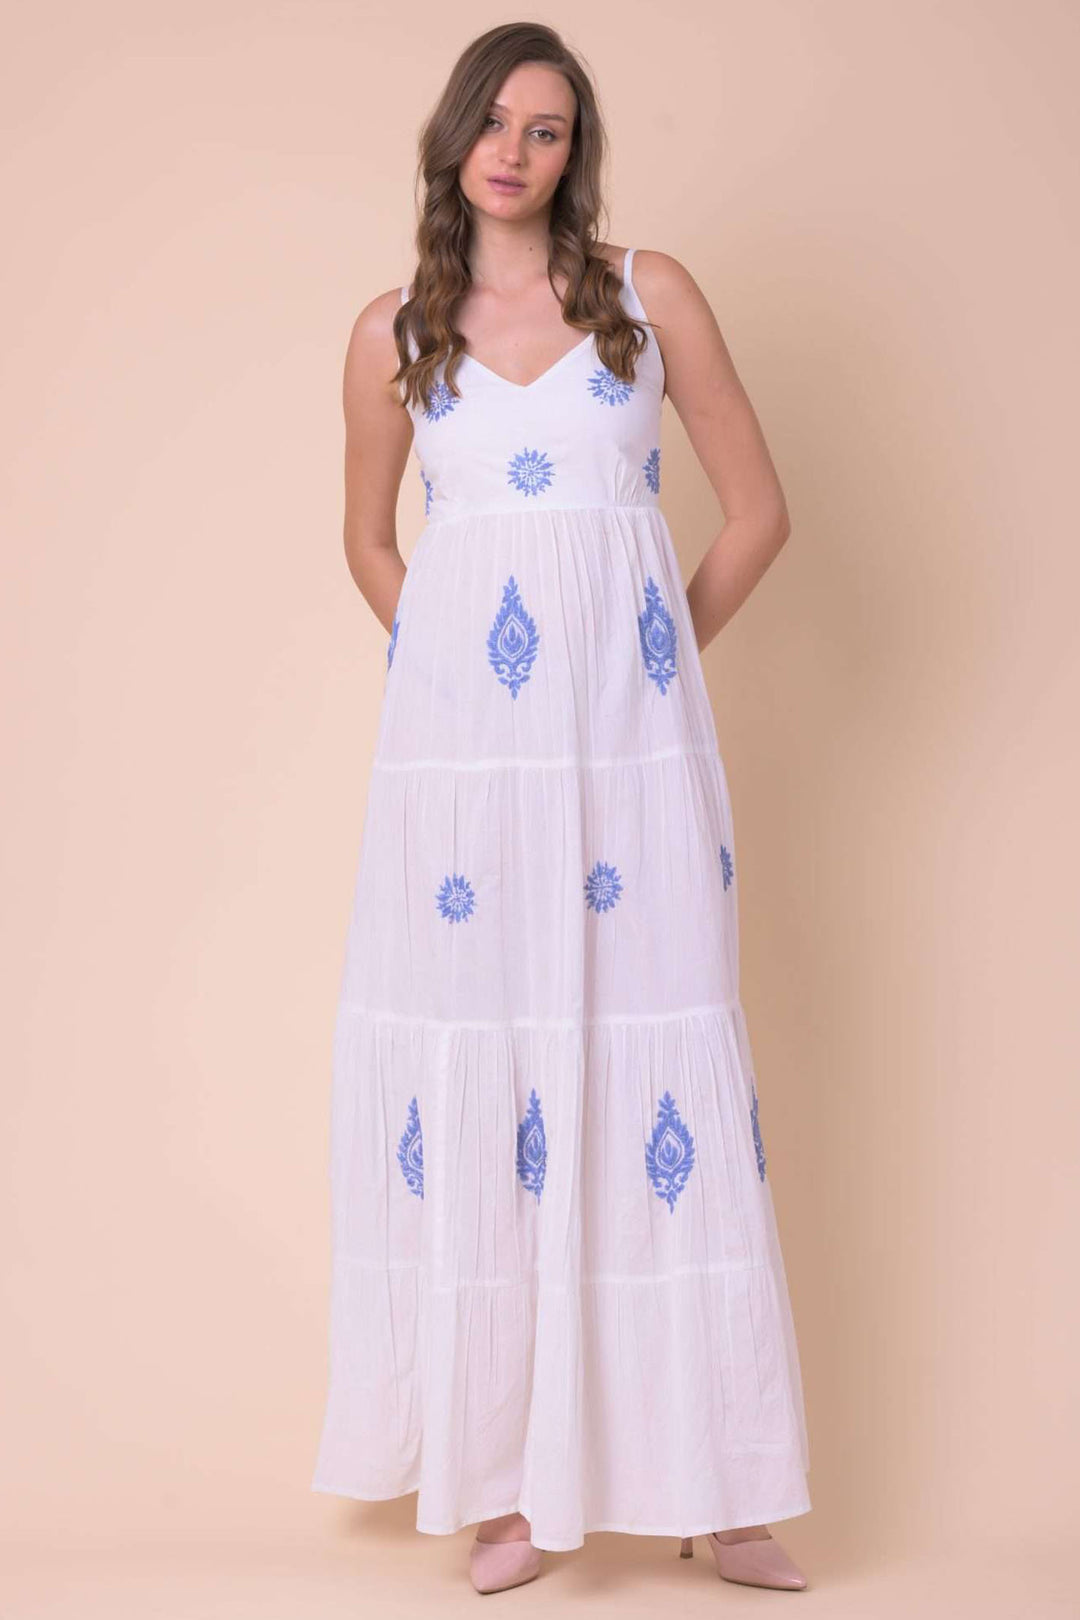 Handprint Dream Apparel NE118B Vanilla White Strap Maxi Dress - Olivia Grace Fashion